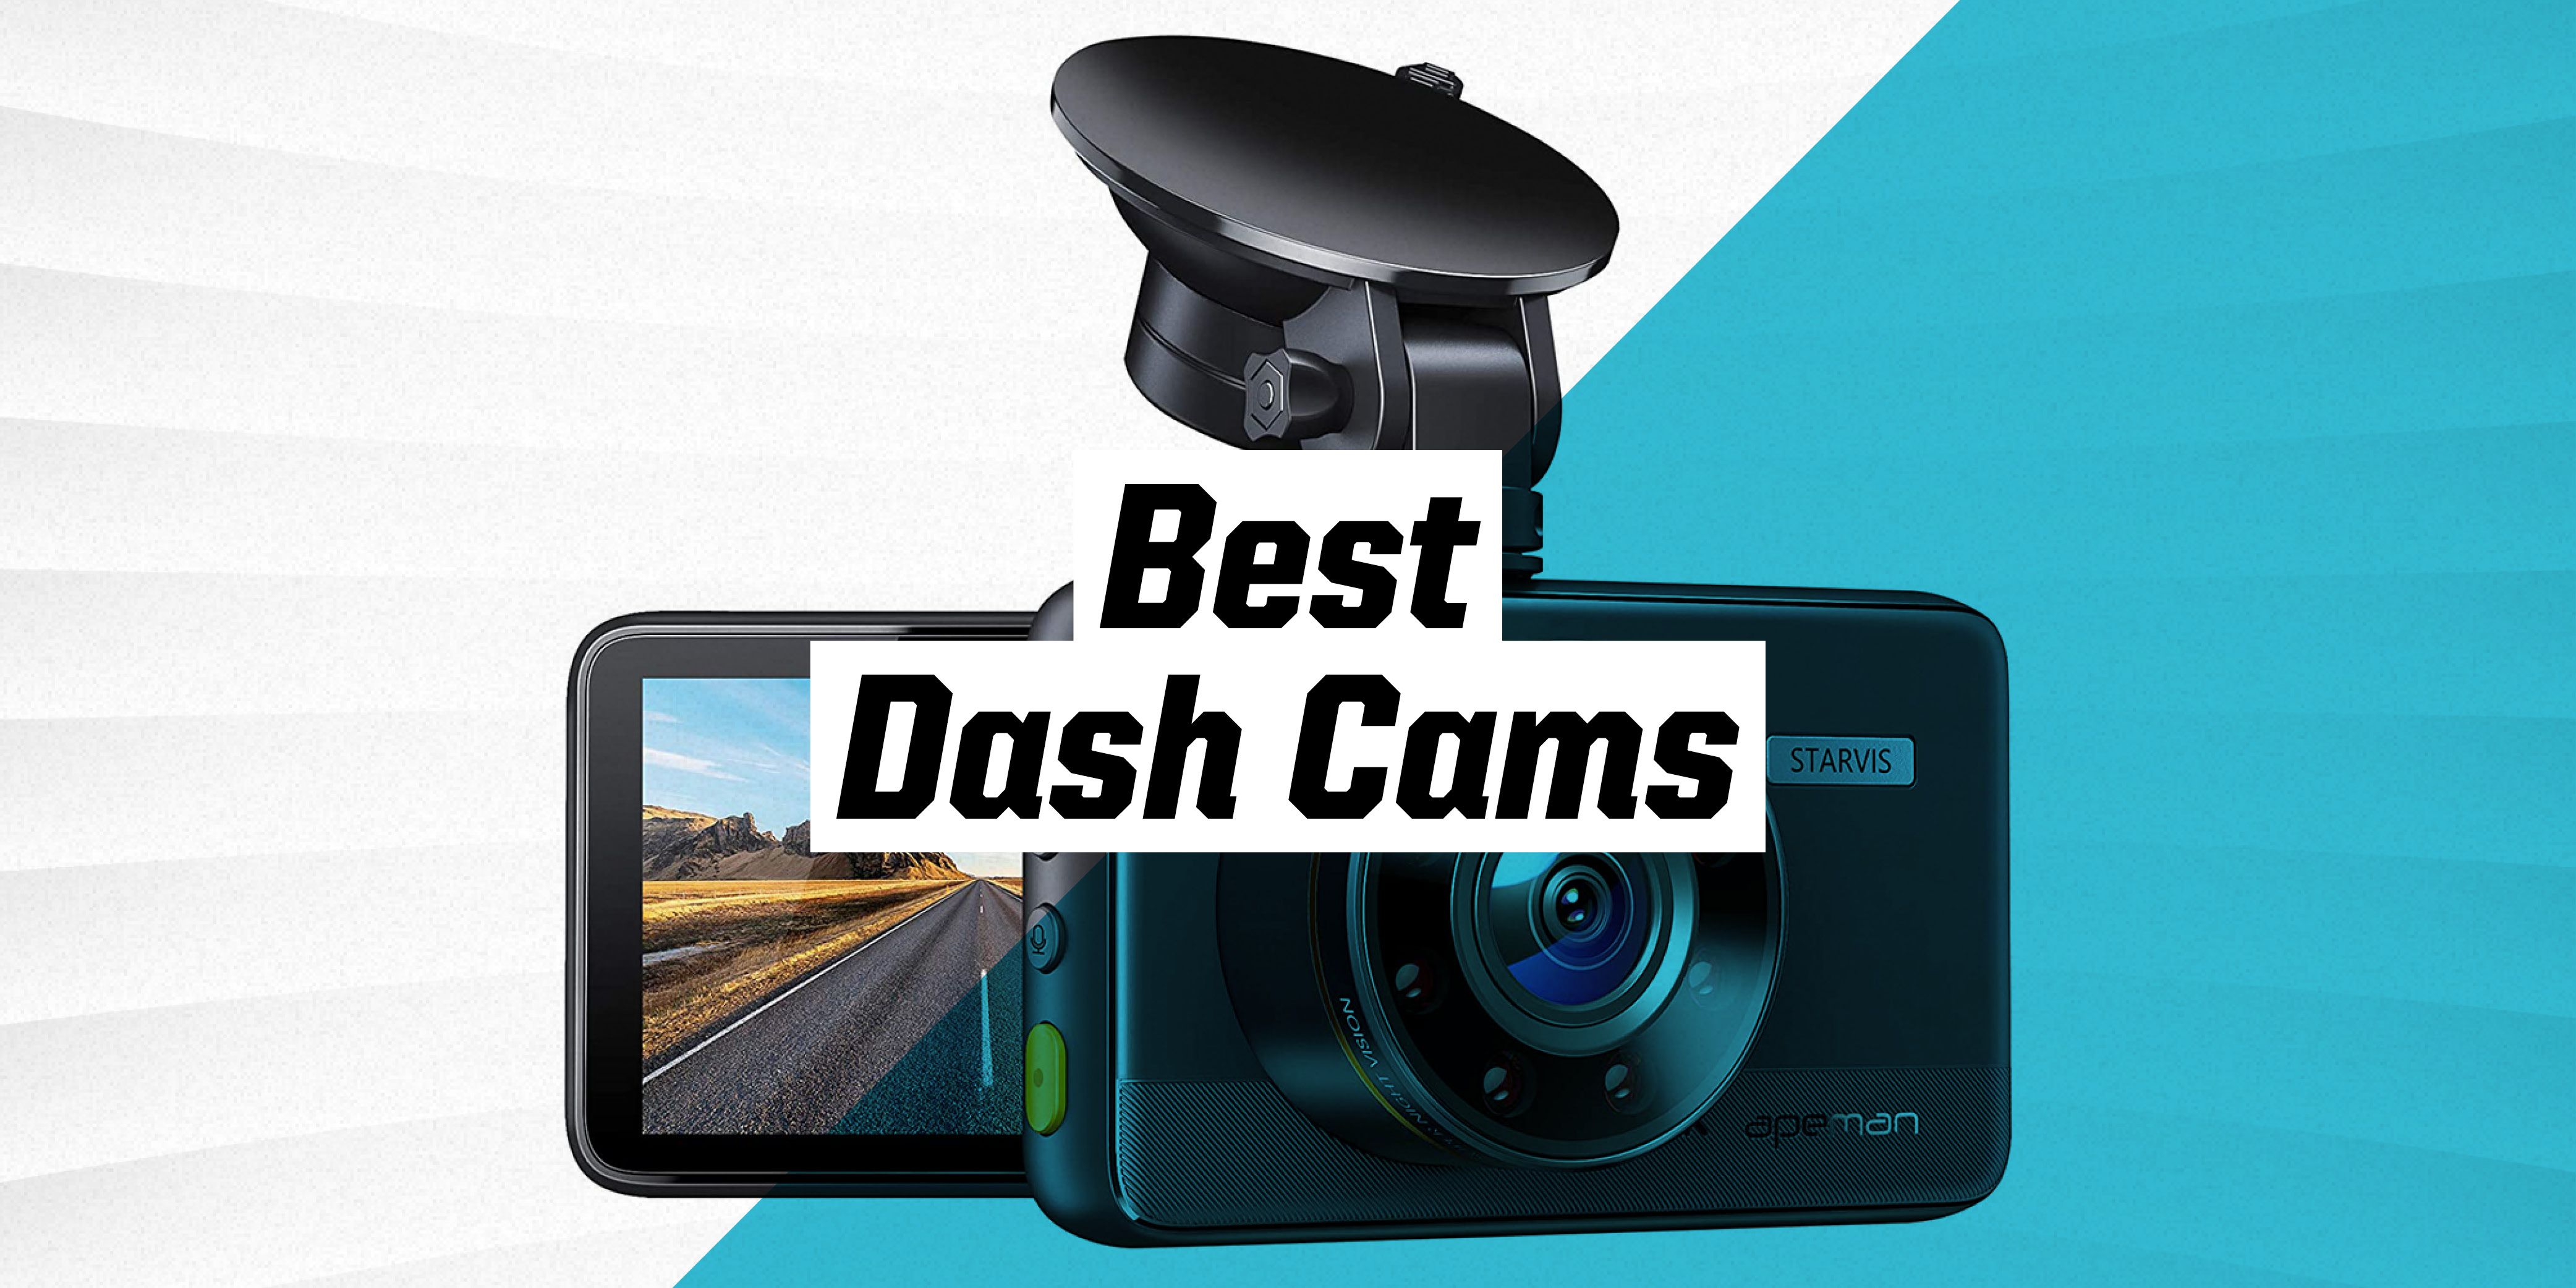 best dash cams 2017 consumer